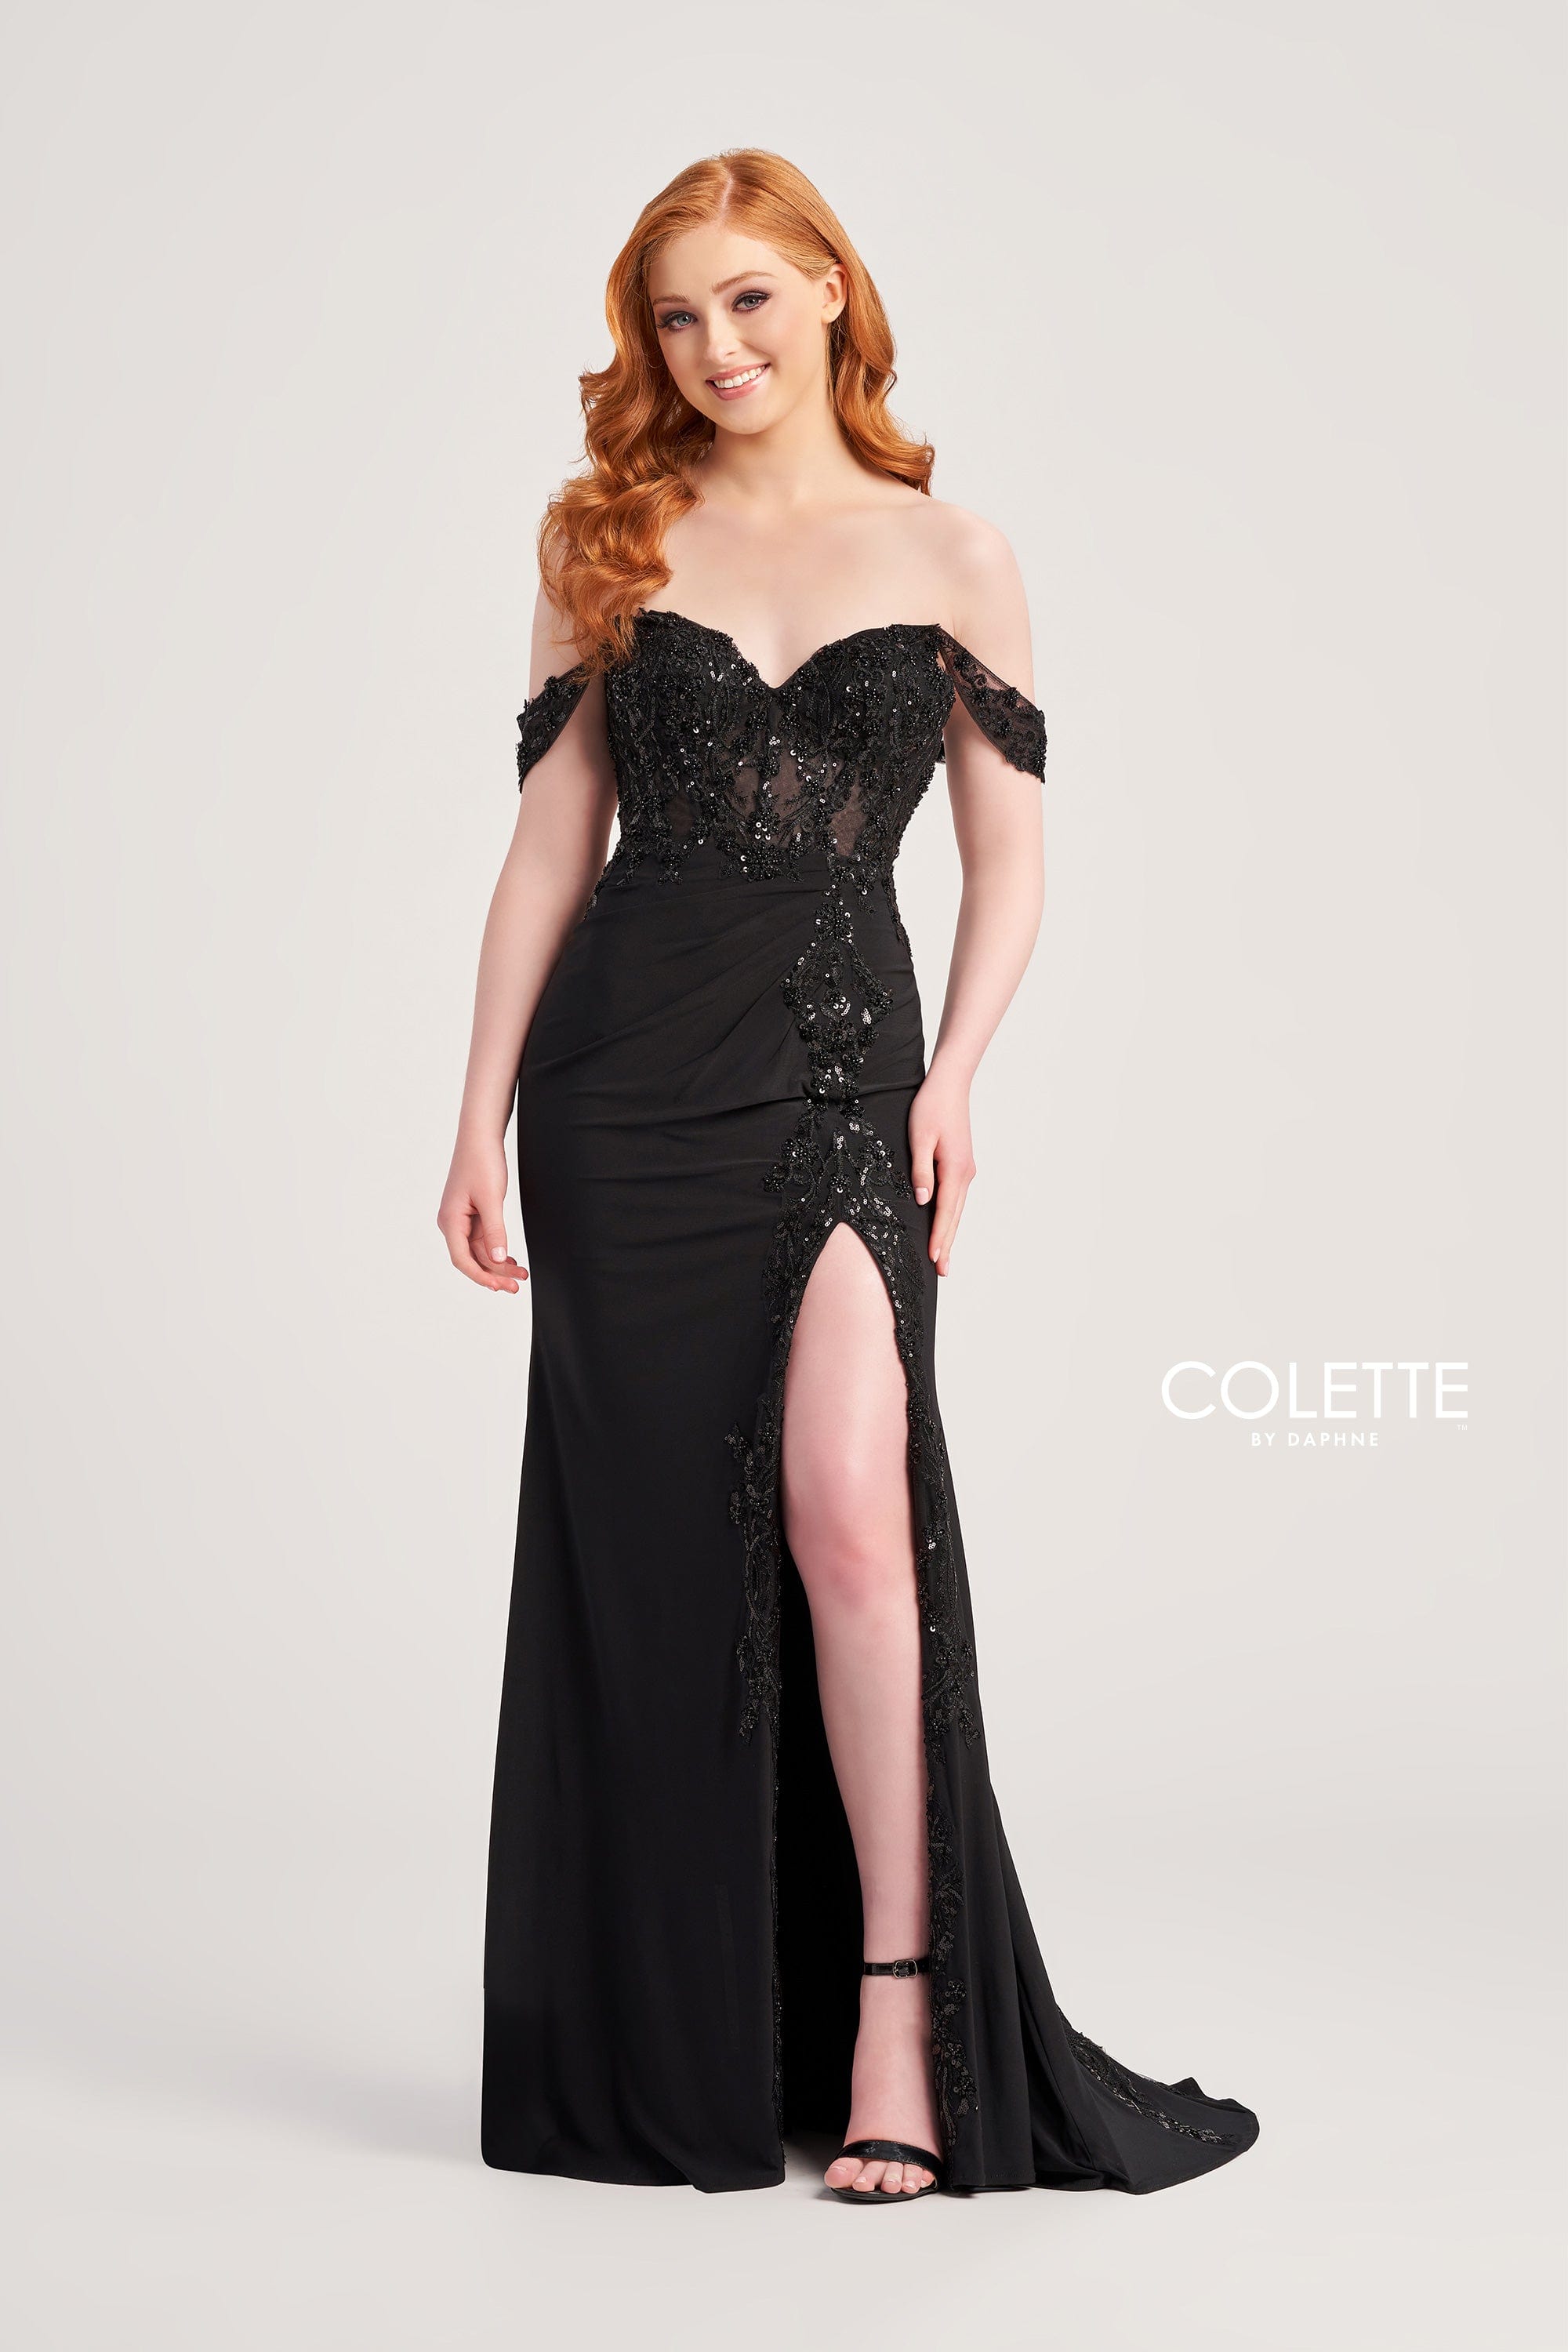 Colette for Mon Cheri Prom Colette: CL5276